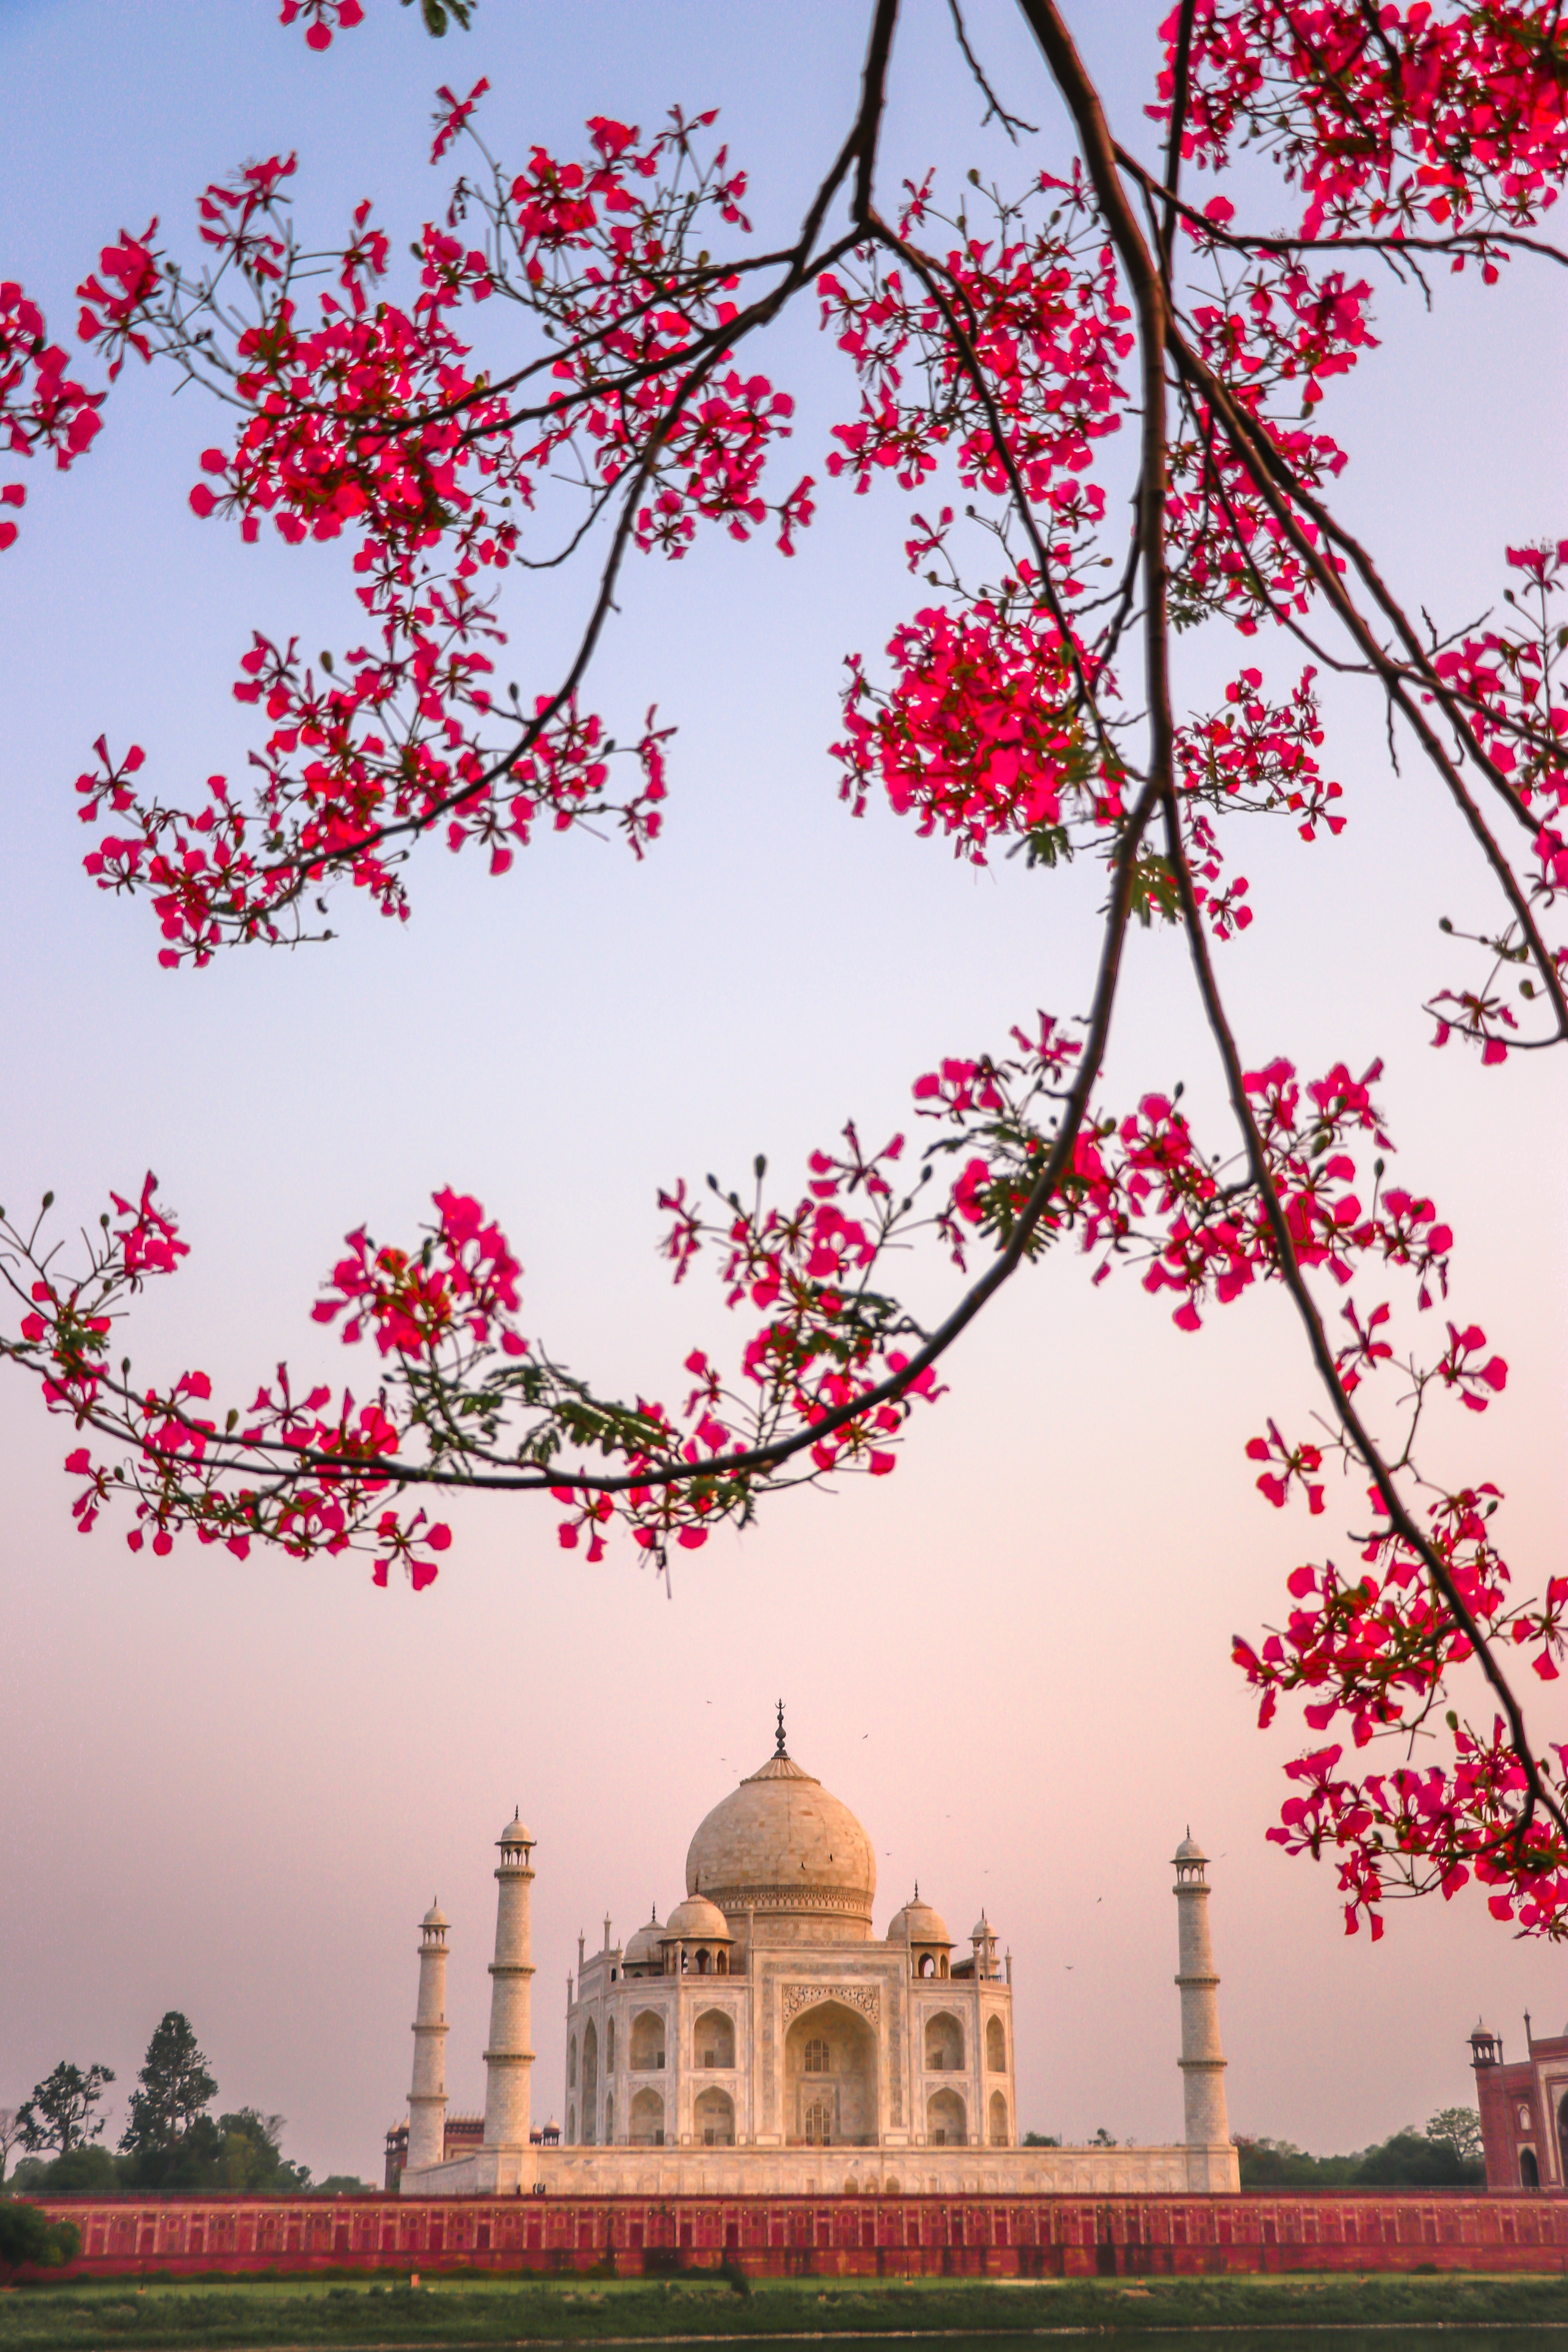 2047-taj-mahal-wallpapers | Taj Mahal india, is a mausoleum … | Flickr